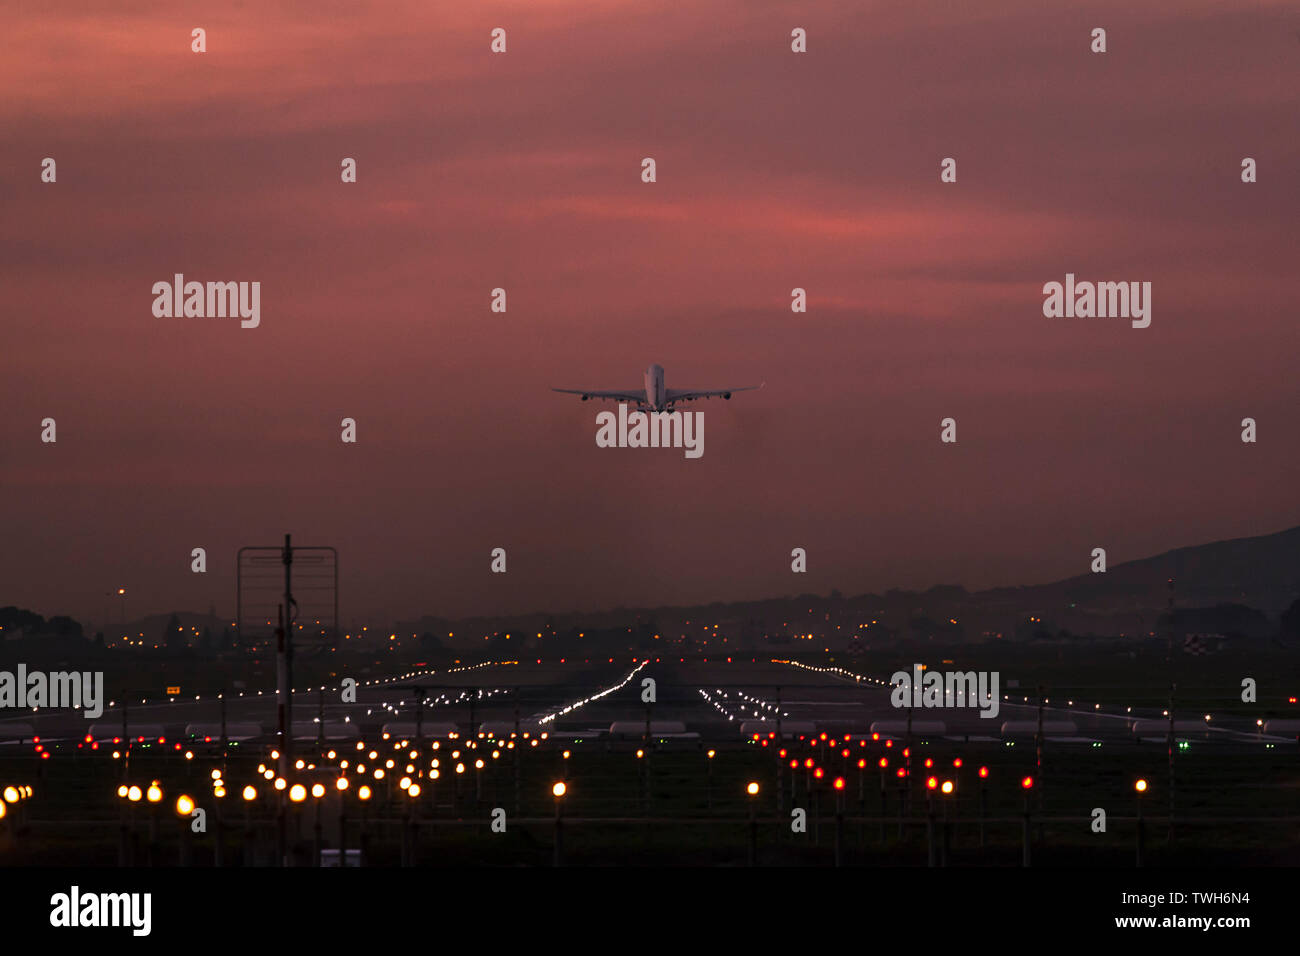 Avion de passagers au départ de l'Aéroport International de Cape Town au crépuscule avec la piste d'atterrissage de toute évidence s'illuminèrent. Banque D'Images